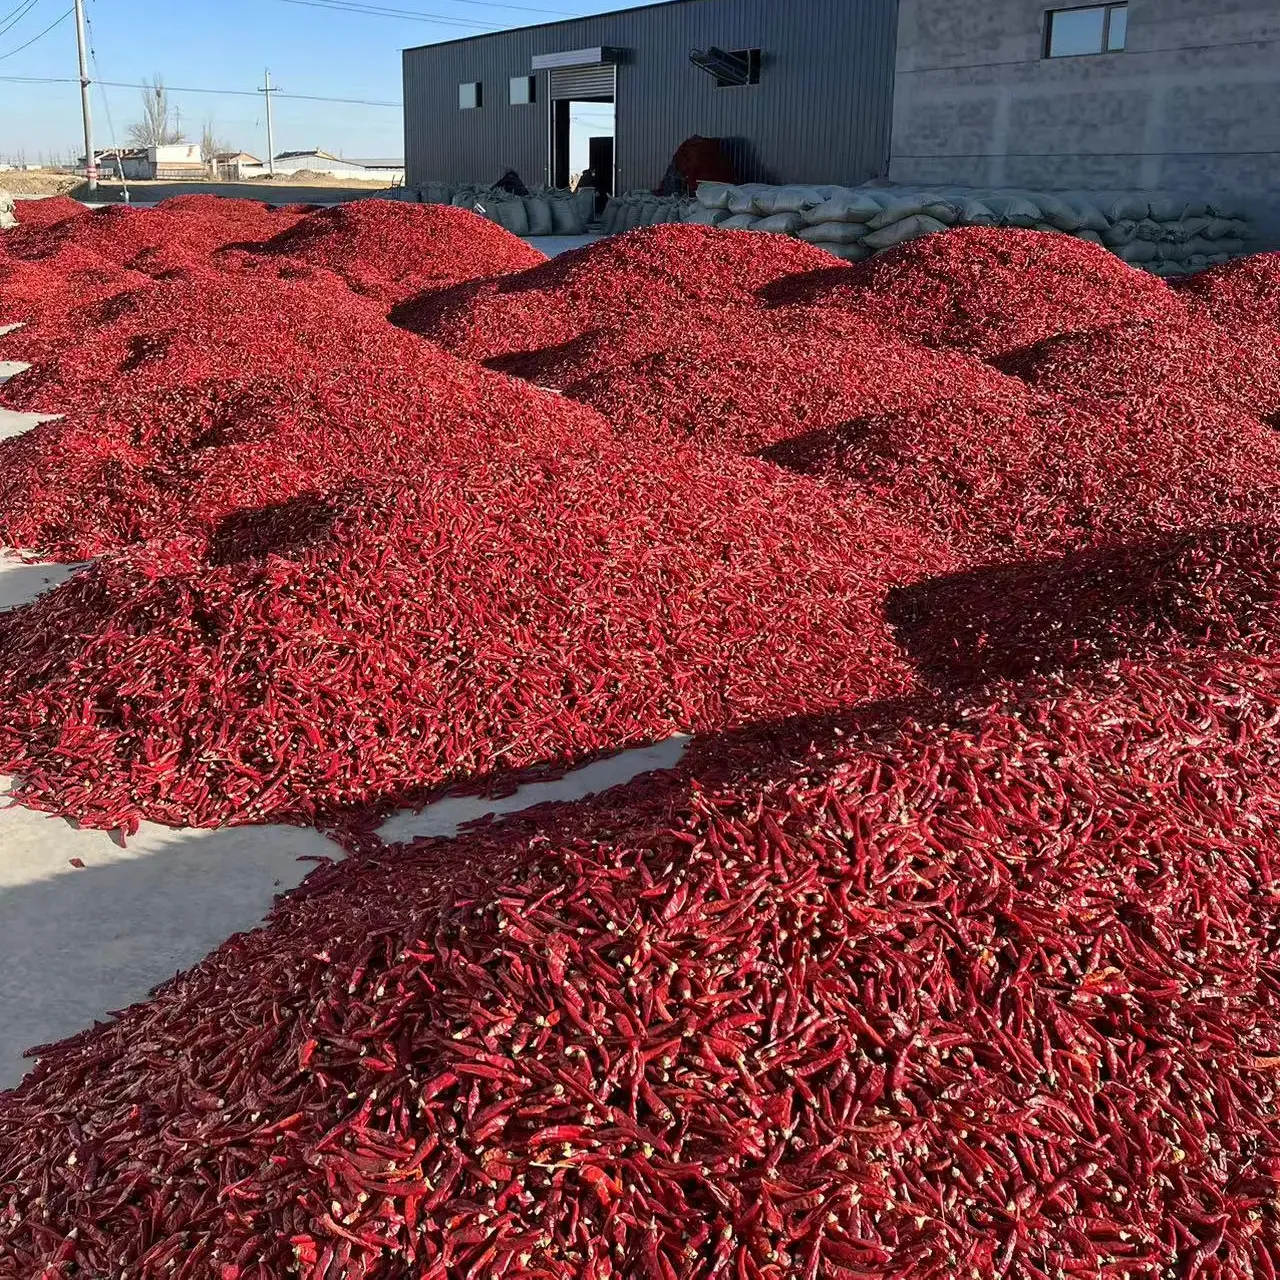 Proses pengeringan cabai merah panas cabai merah cabe merah kering